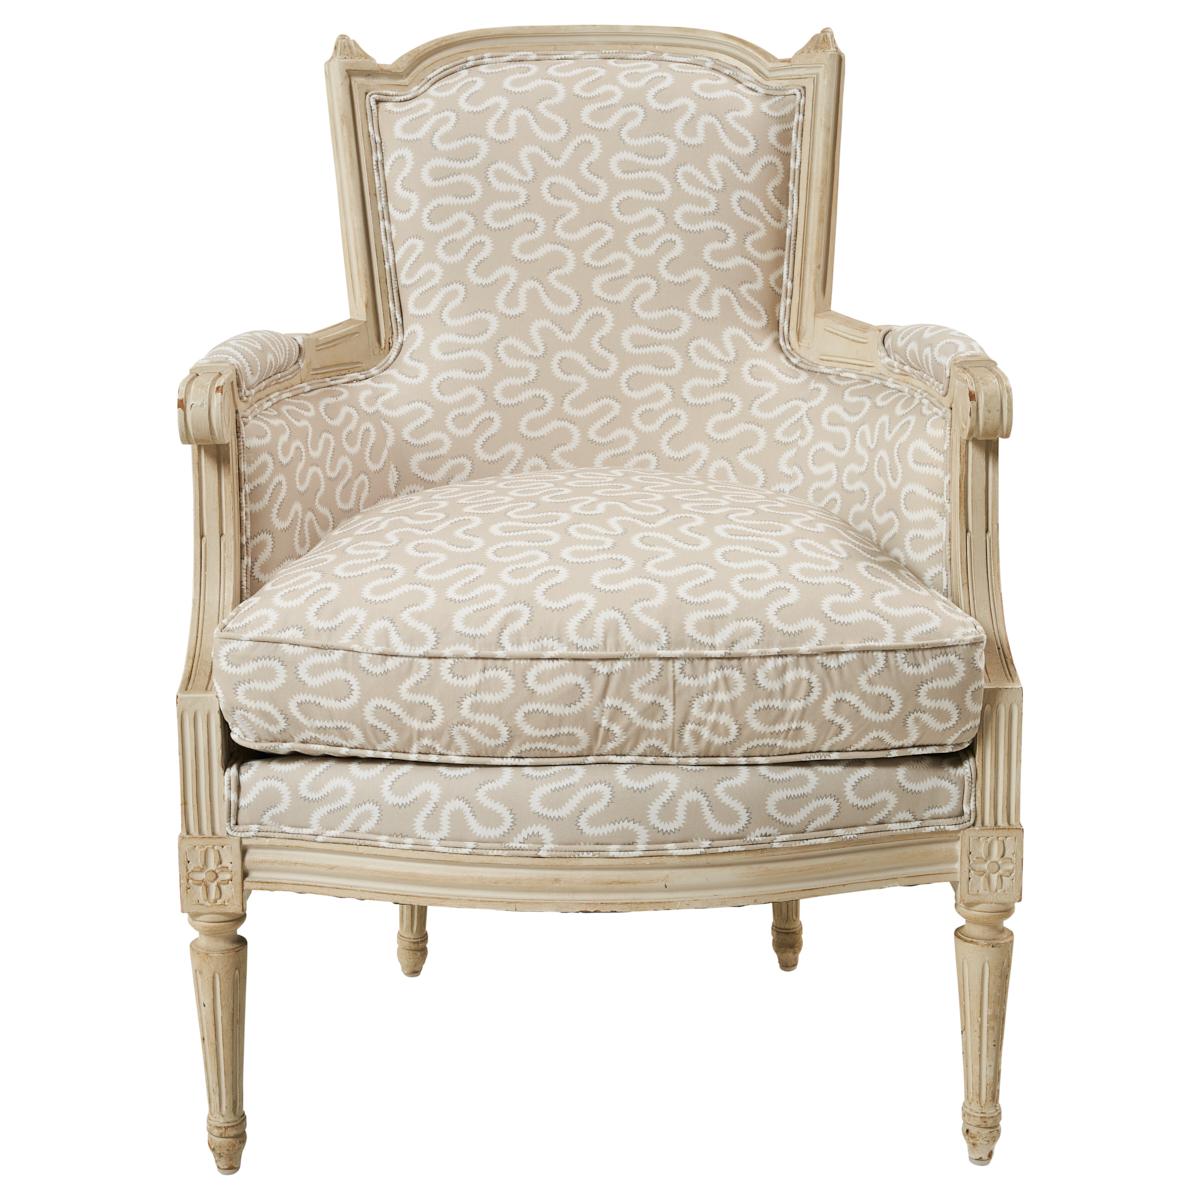 Dieses in Frankreich entdeckte Set von Maison Jansen im Stil von Louis XVI bildet ein hübsches Quartett. Die helle Polsterung und die lackierte Oberfläche verleihen diesen klassischen Stühlen eine zwanglose Eleganz und einen zeitlosen Reiz.
 